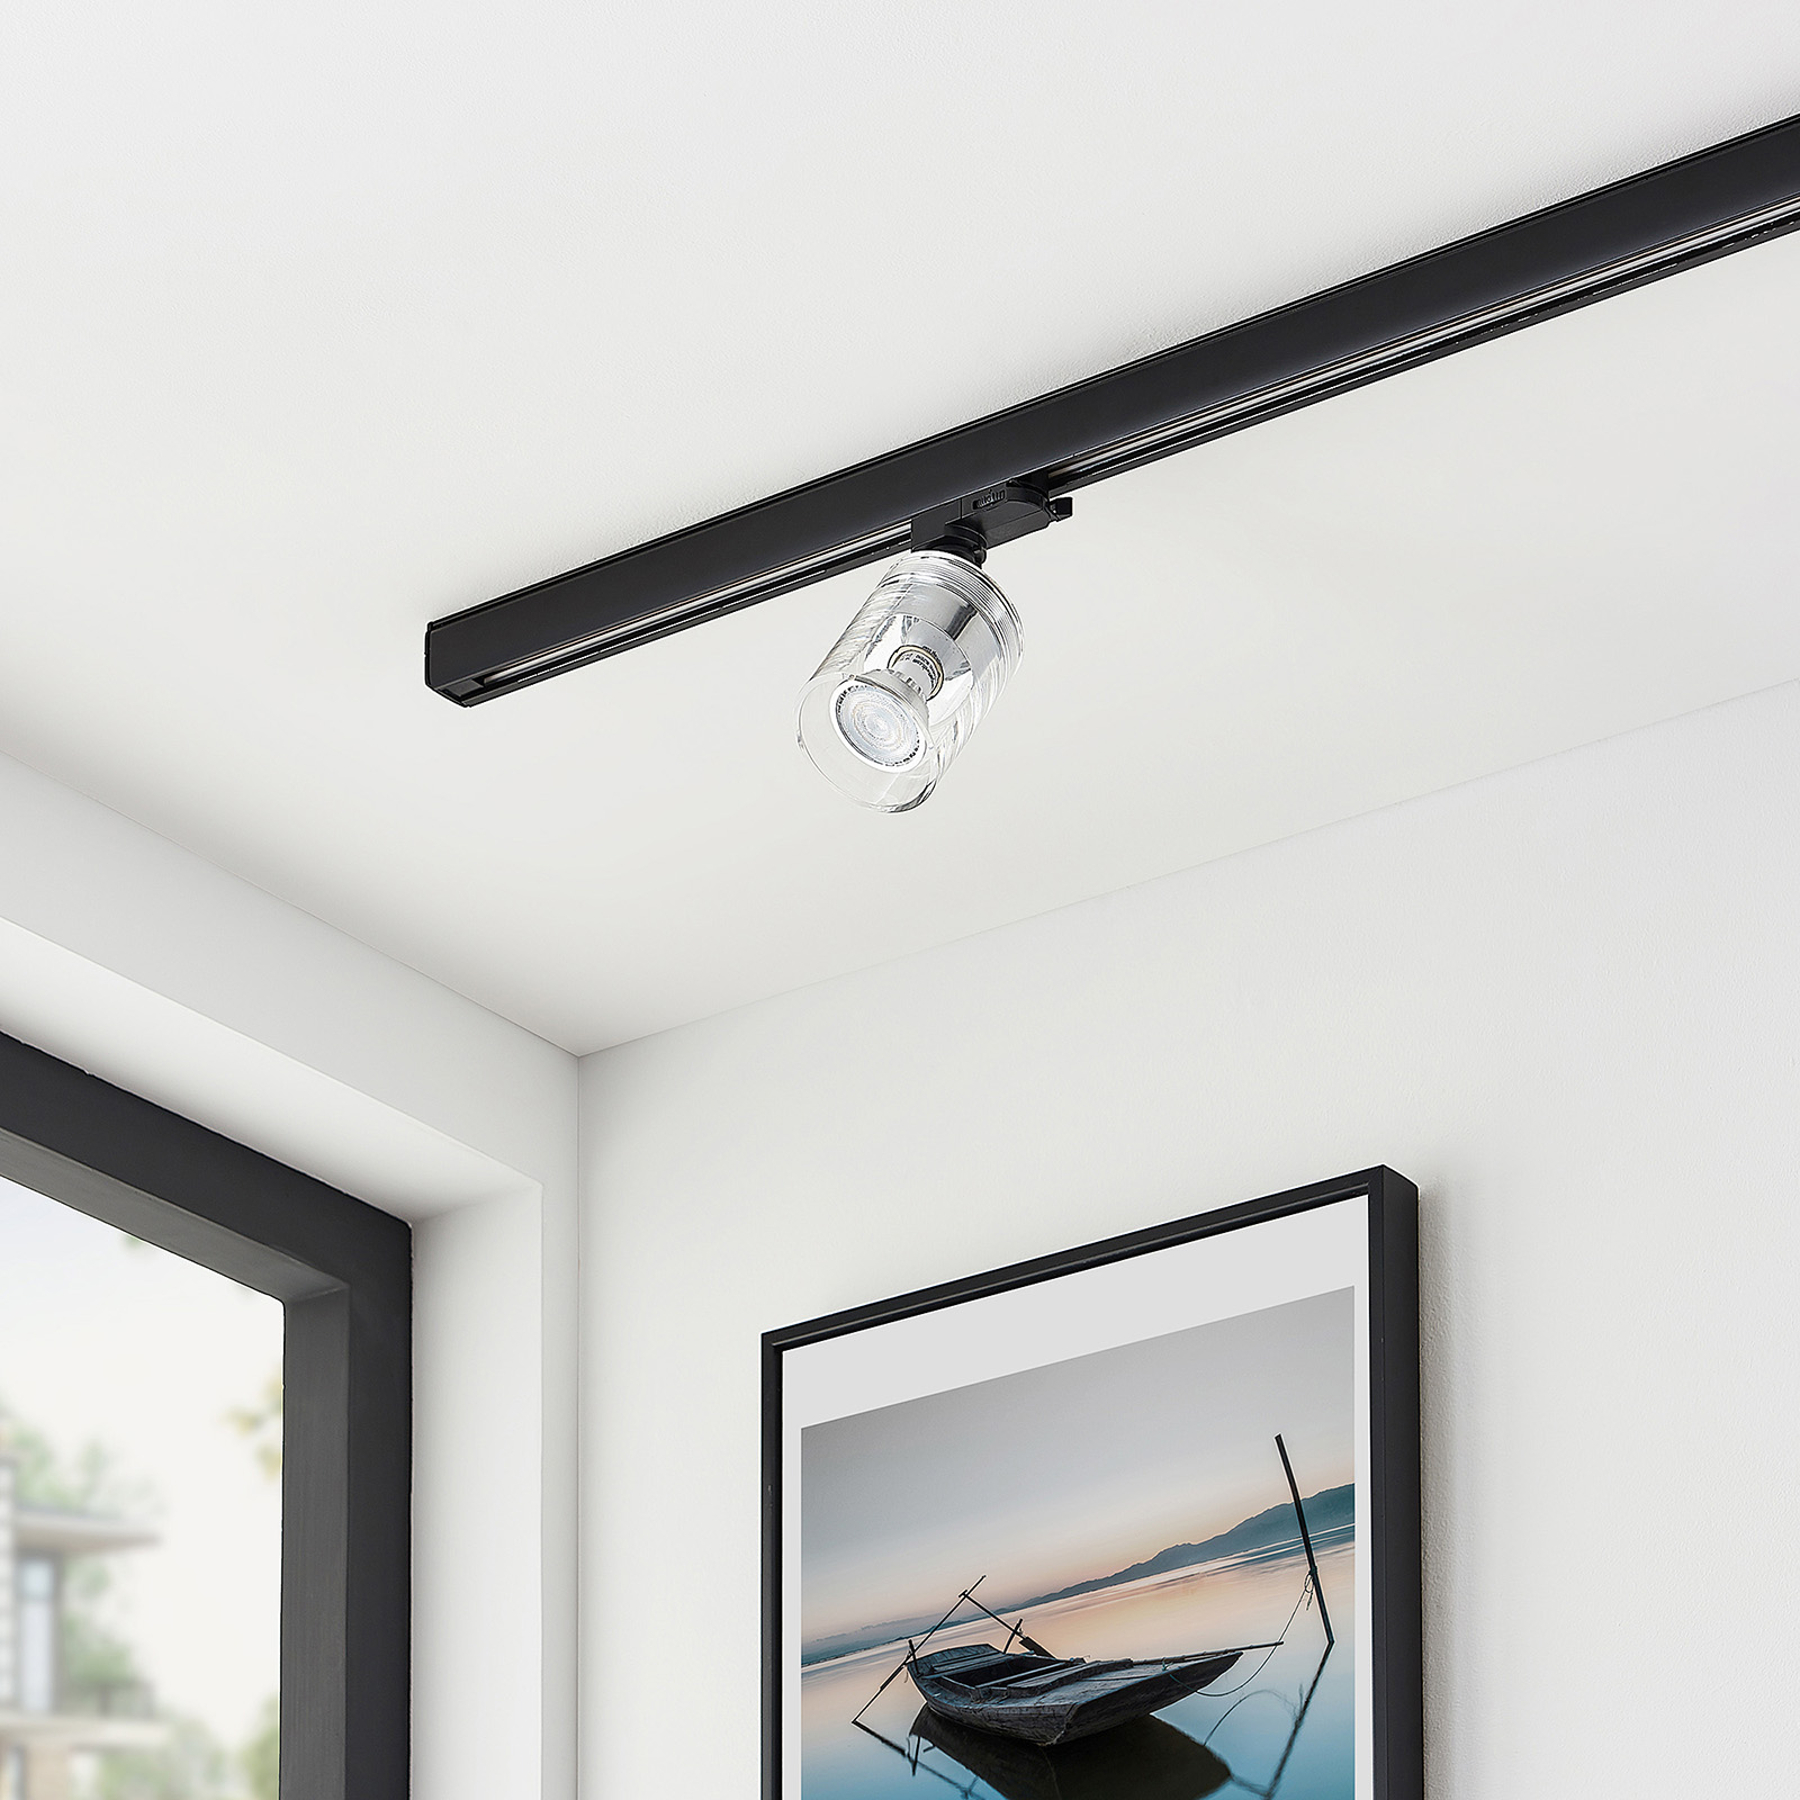 35 Watt Plafonnier Zuoz en bois & métal blanc compatible ampoules LED pour 2 ampoules GU10 max luminaire idéal dans un salon contemporain spots de plafond rotatifs de style moderne